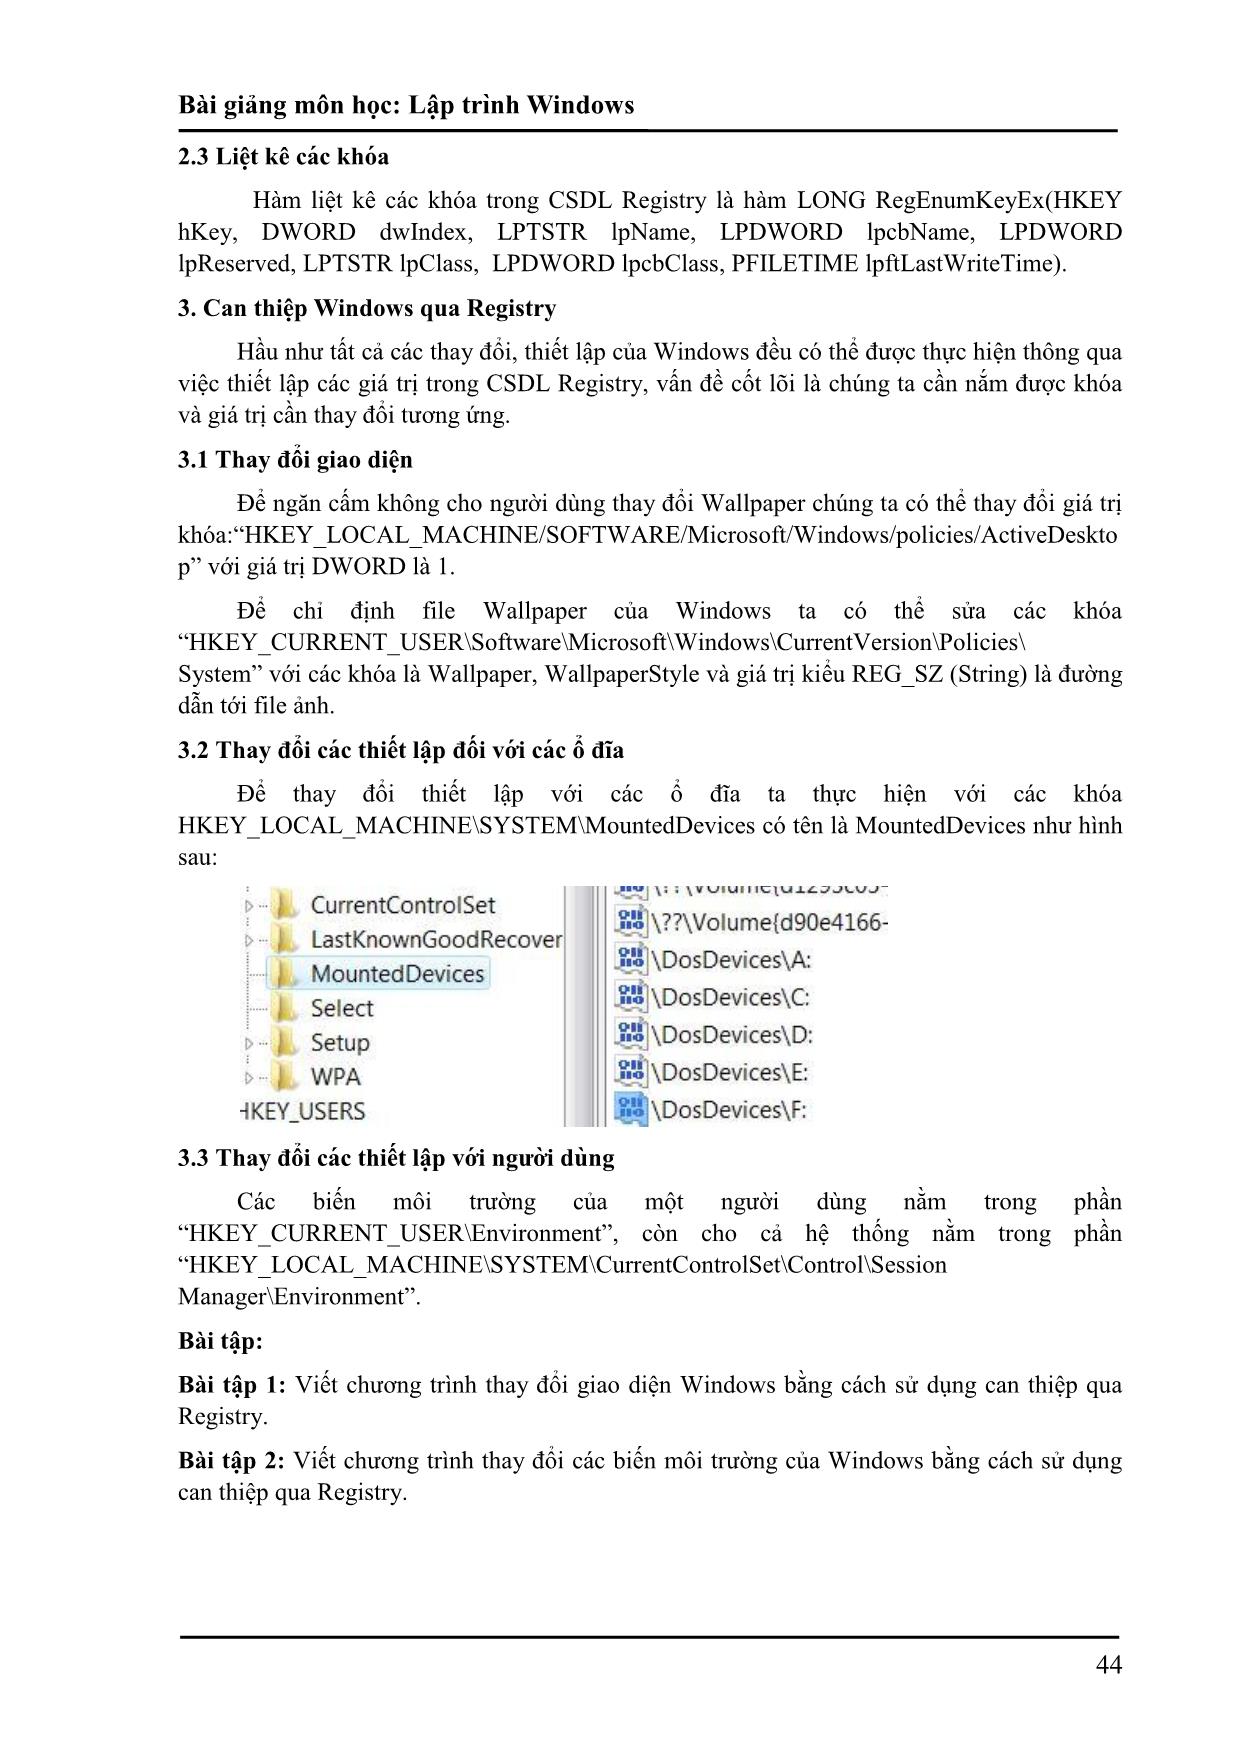 Giáo trình Lập trình Windows (Phần 2) trang 4